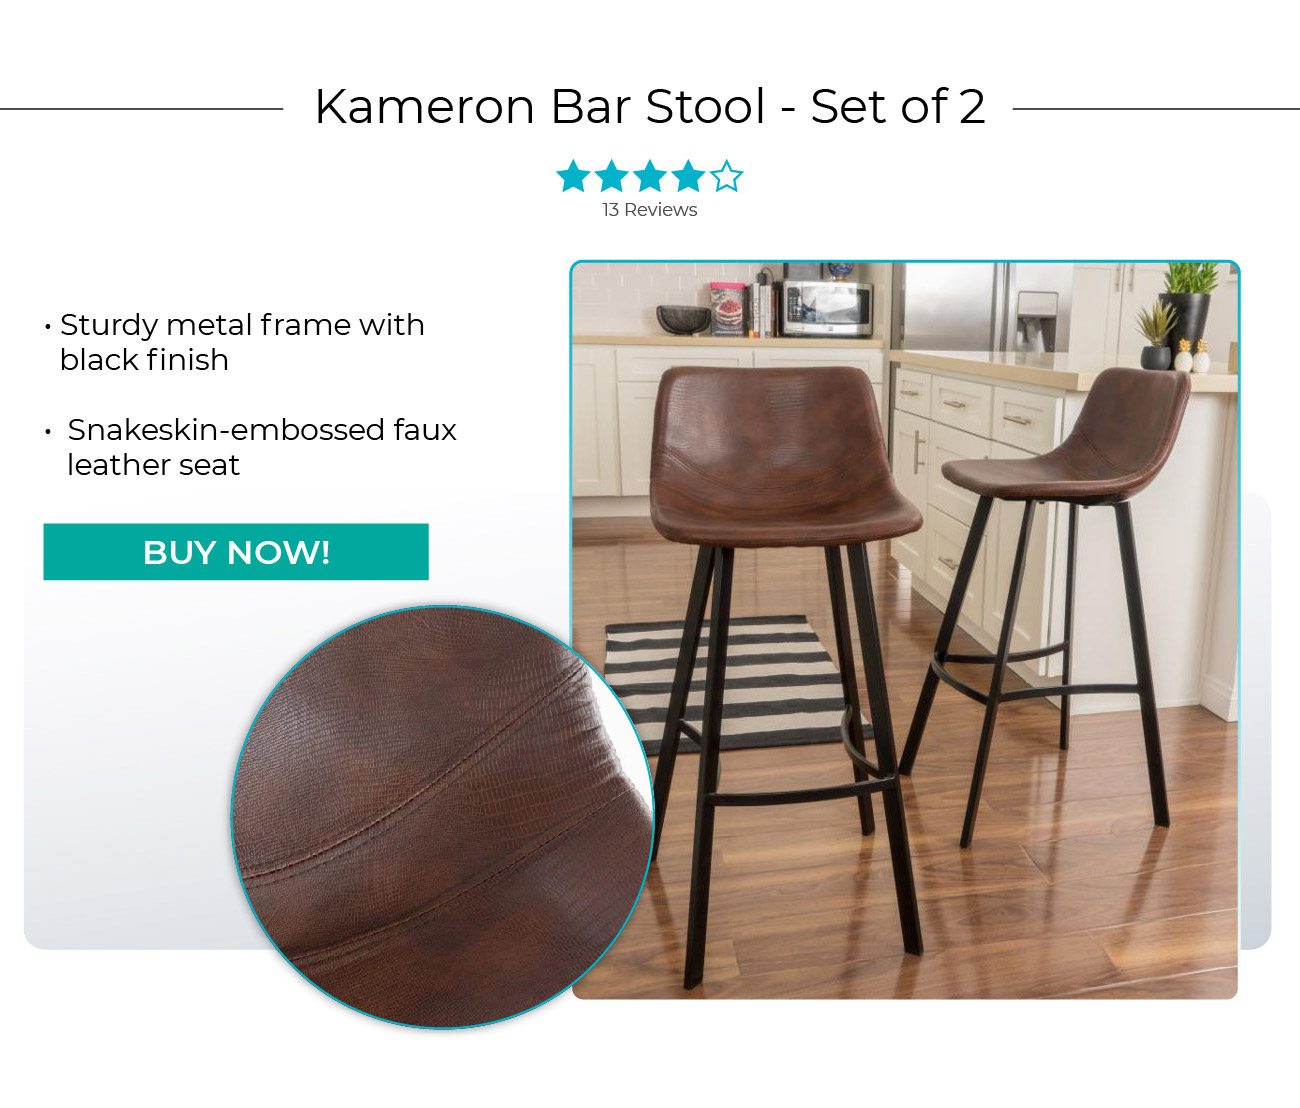 Kameron Bar Stool - Set of 2